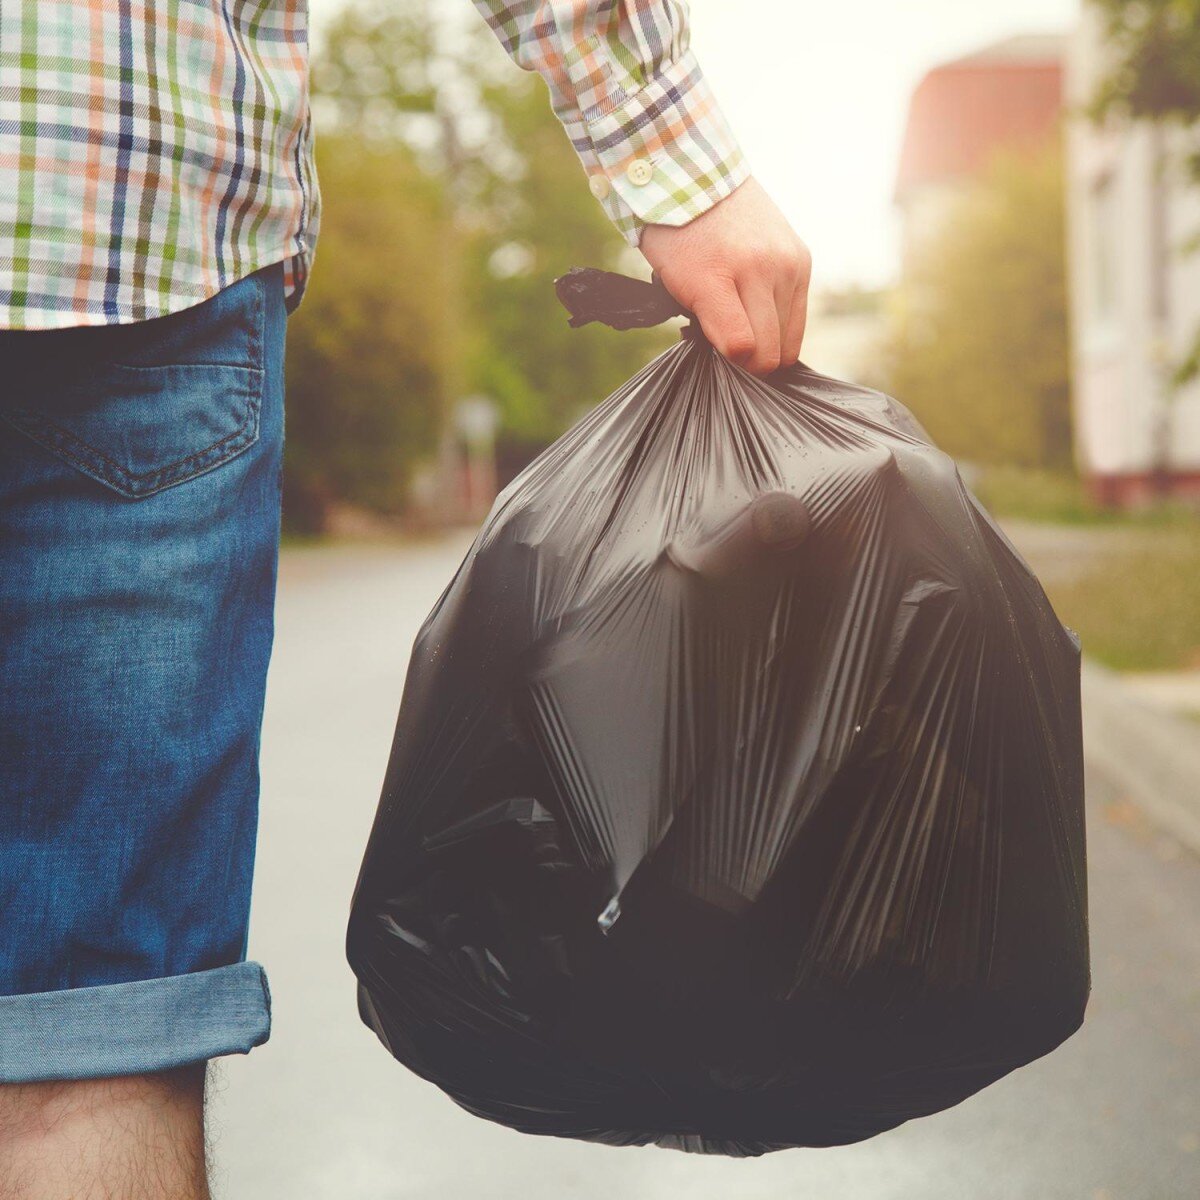 Когда и как правильно выносить мусор из дома